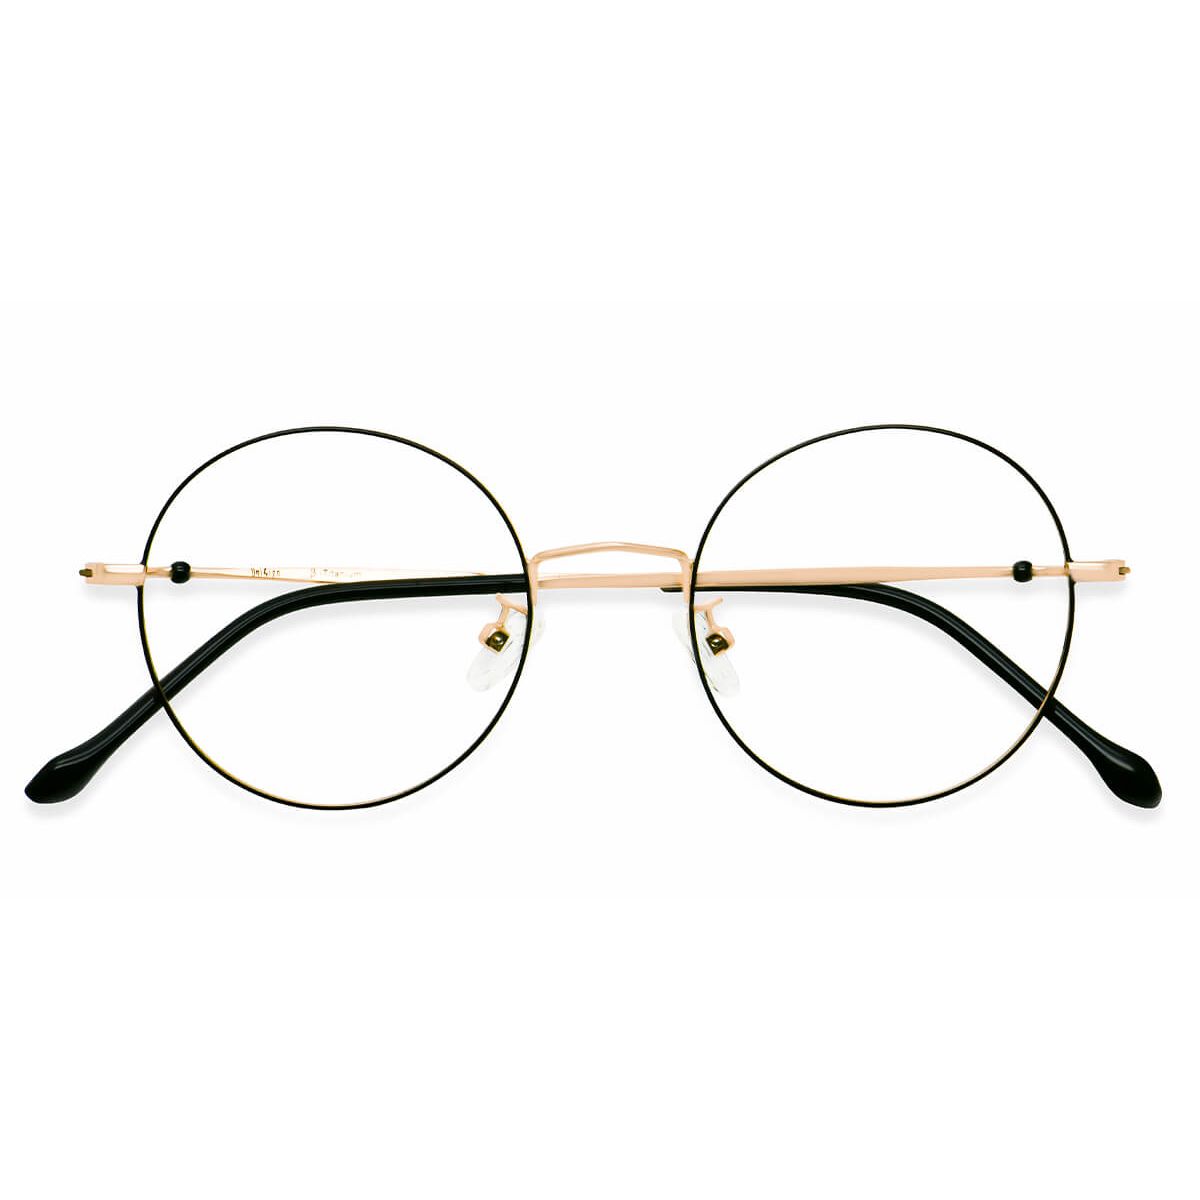 U6162 Round Pink Eyeglasses Frames | Leoptique